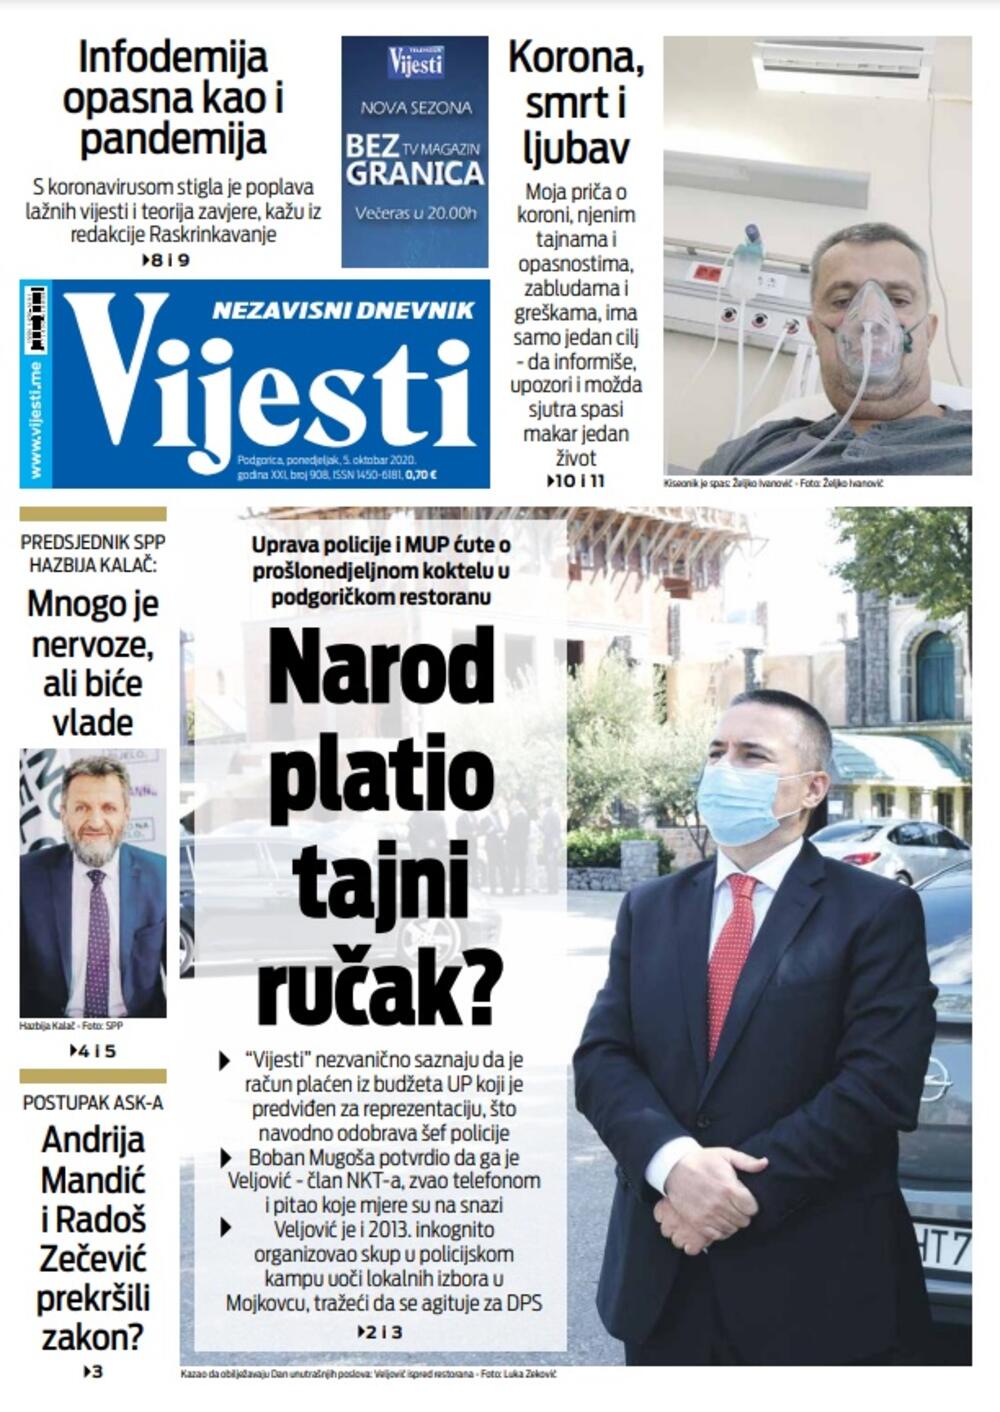 Naslovna strana "Vijesti" za ponedjeljak 5. oktobar 2020. godine, Foto: Vijesti